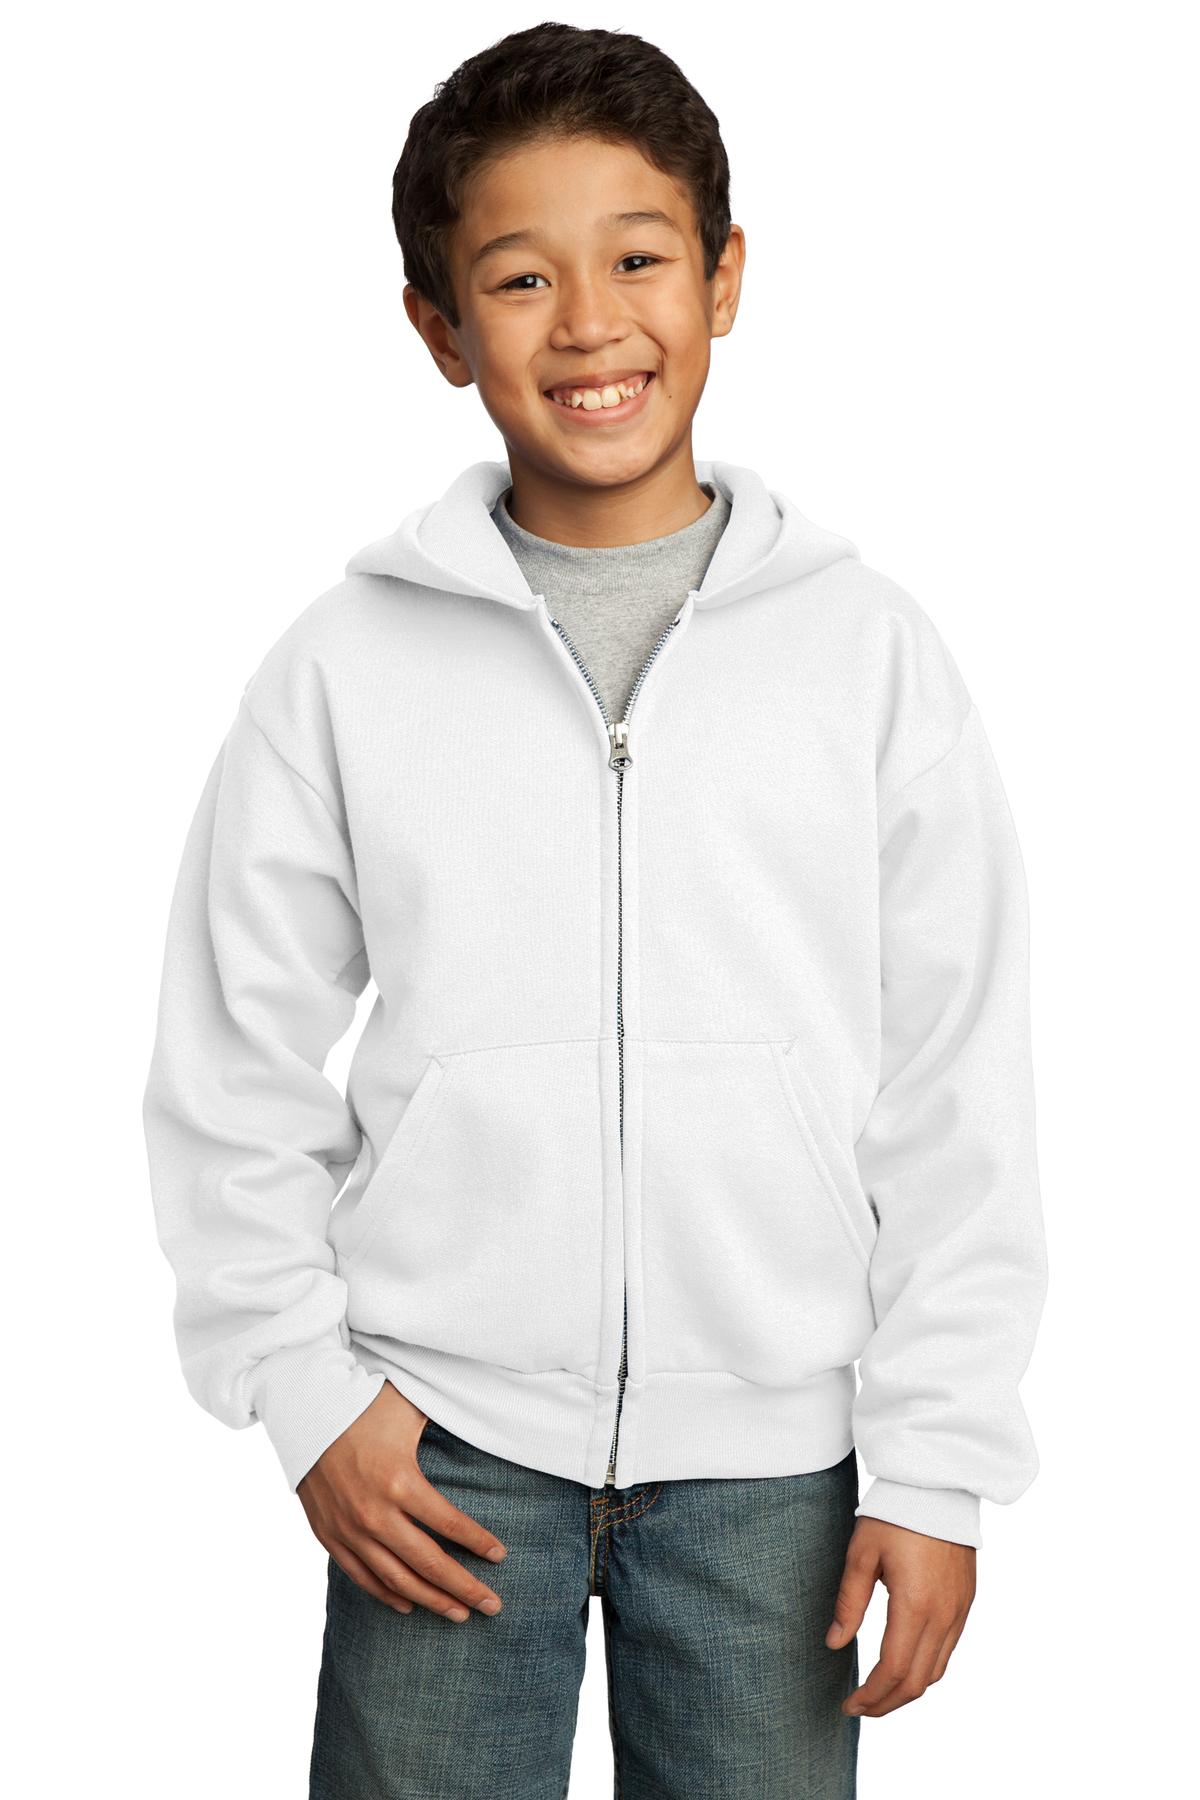 Port & Company - Youth Core Fleece Full-Zip Hooded Sweatshirt-